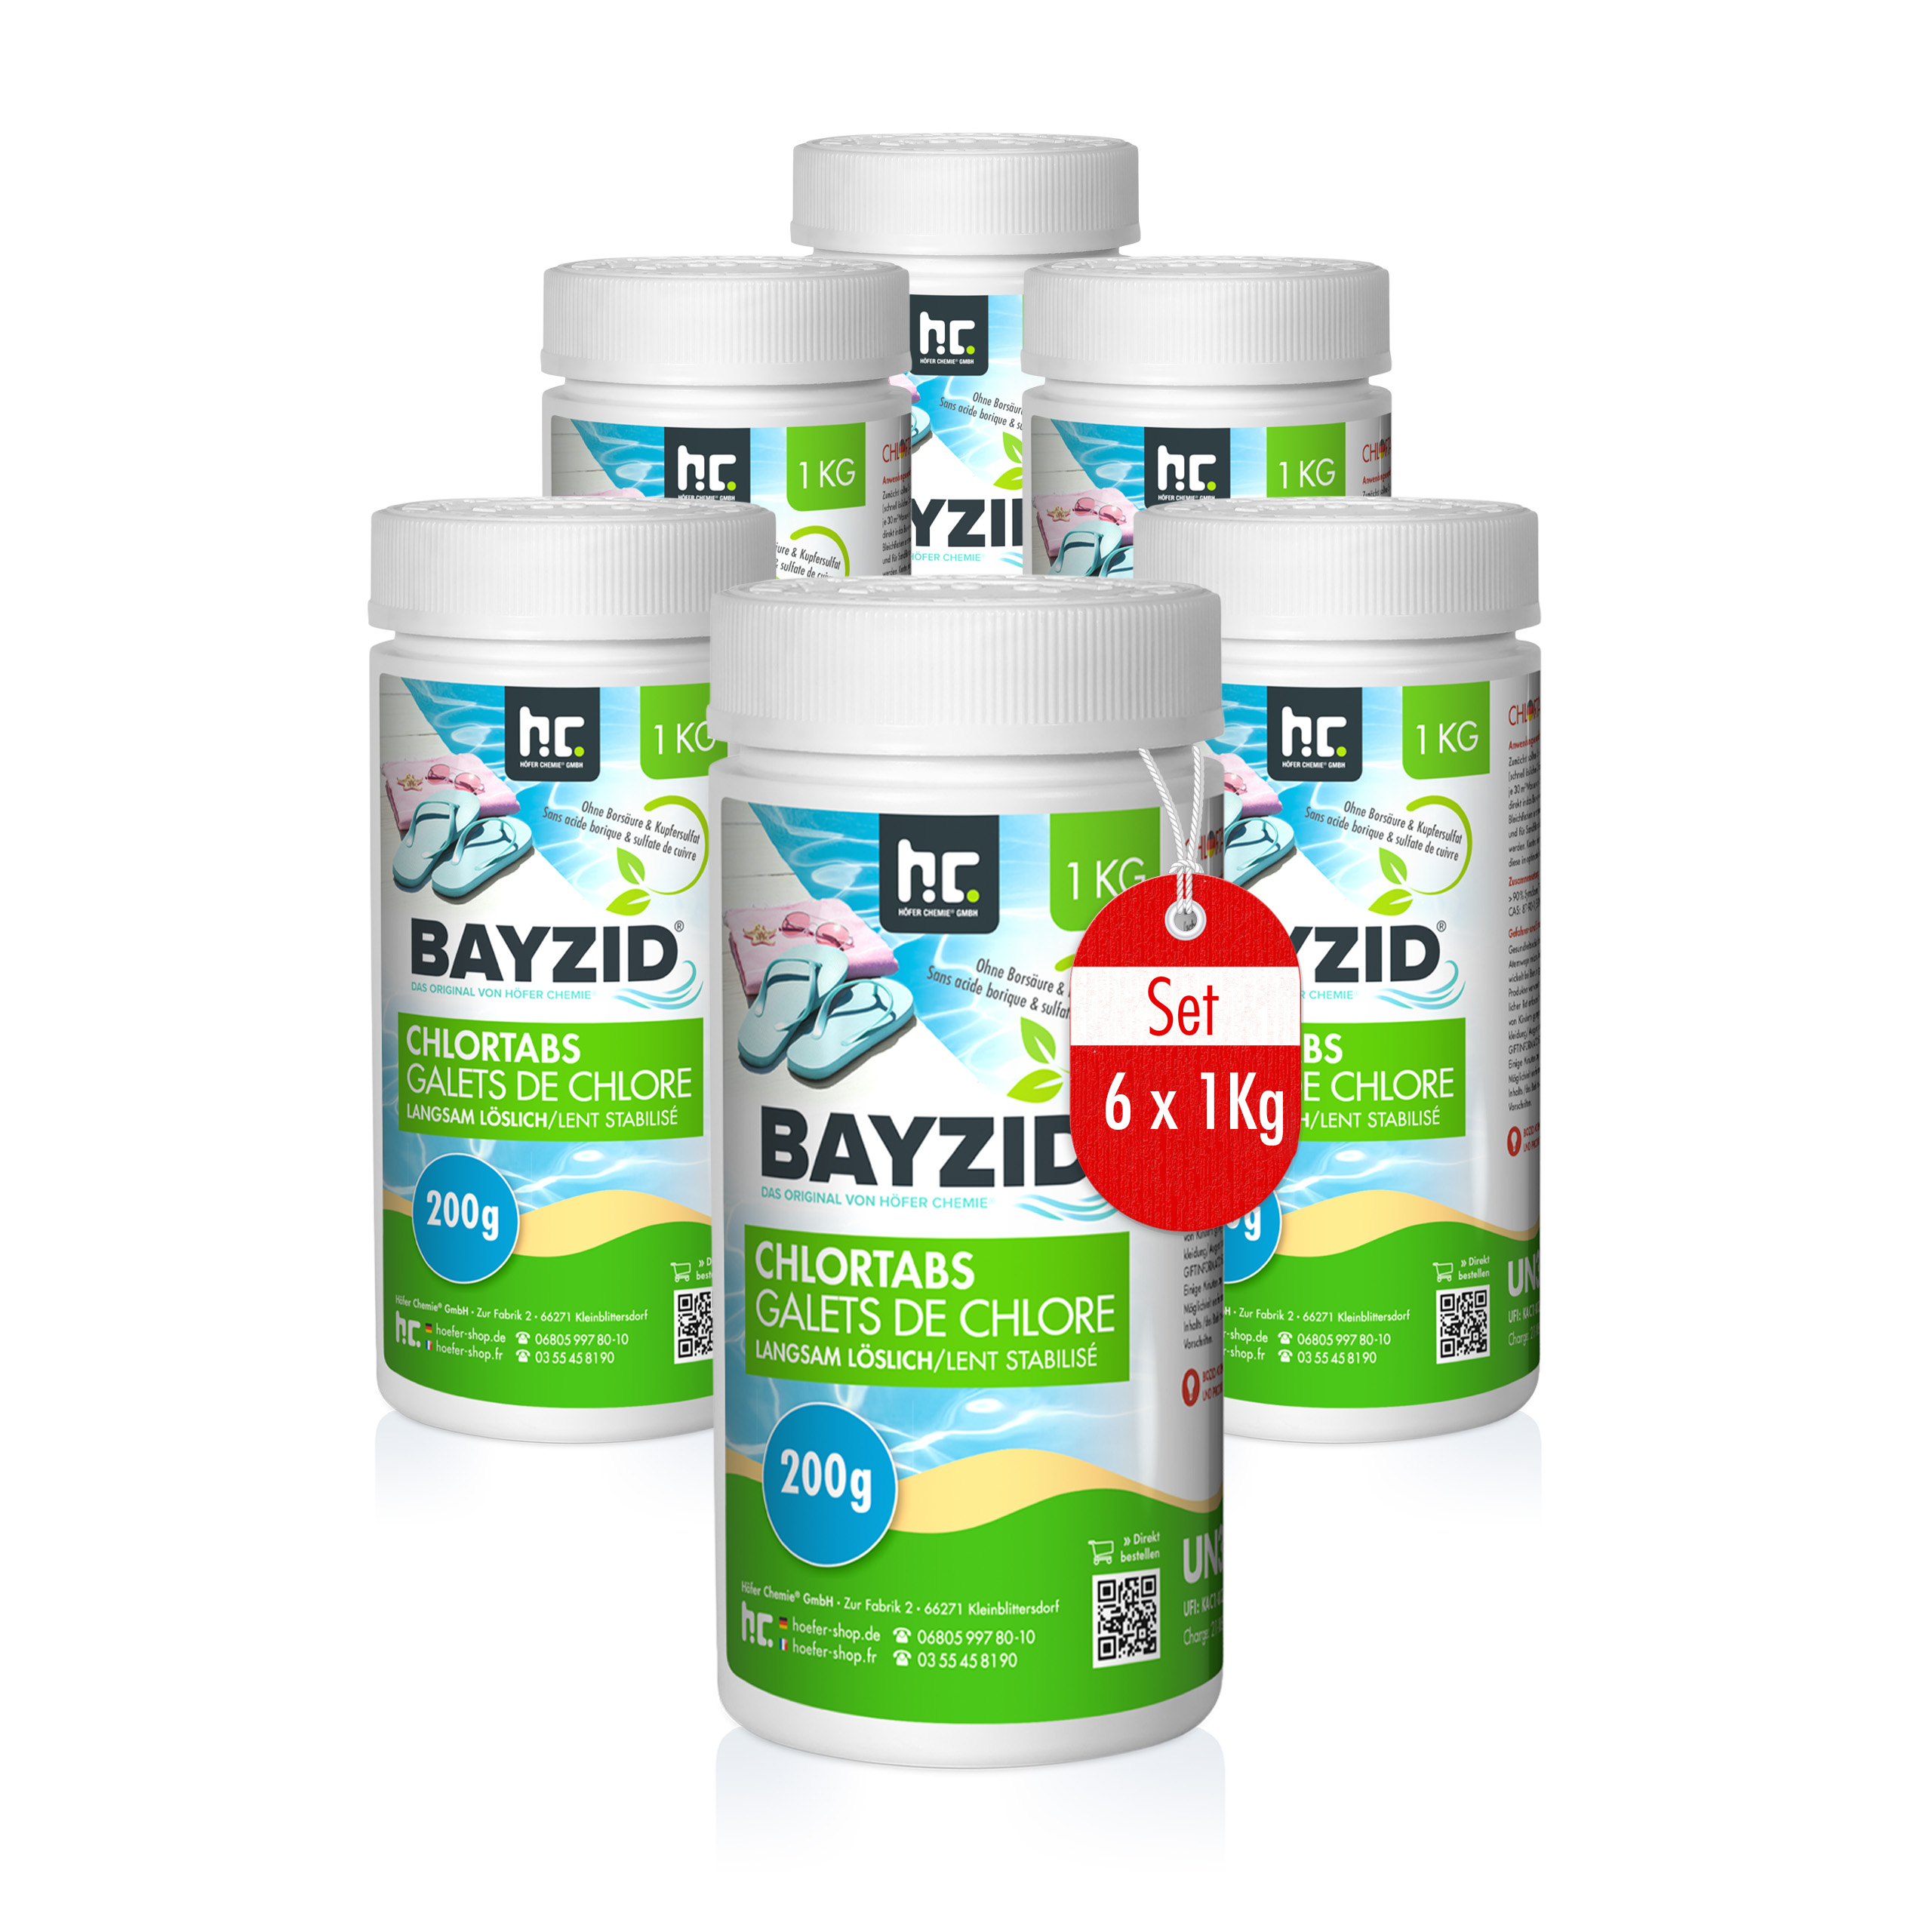 1 kg BAYZID® Chlortabs 200g langsam löslich